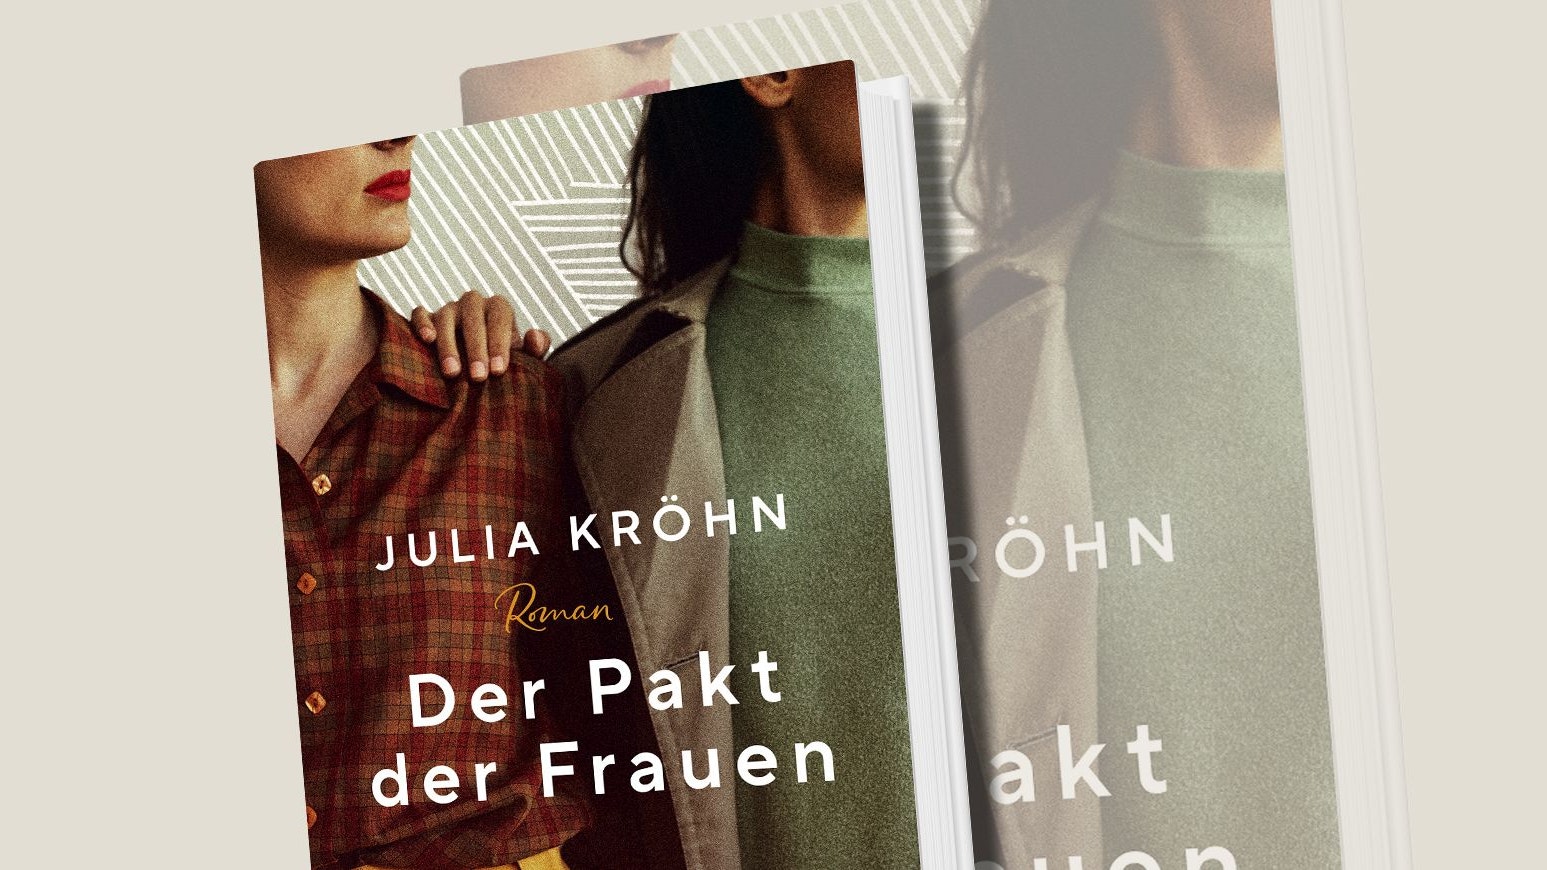 Julia Kröhn, "Der Pakt der Frauen", Heyne, 22 Euro